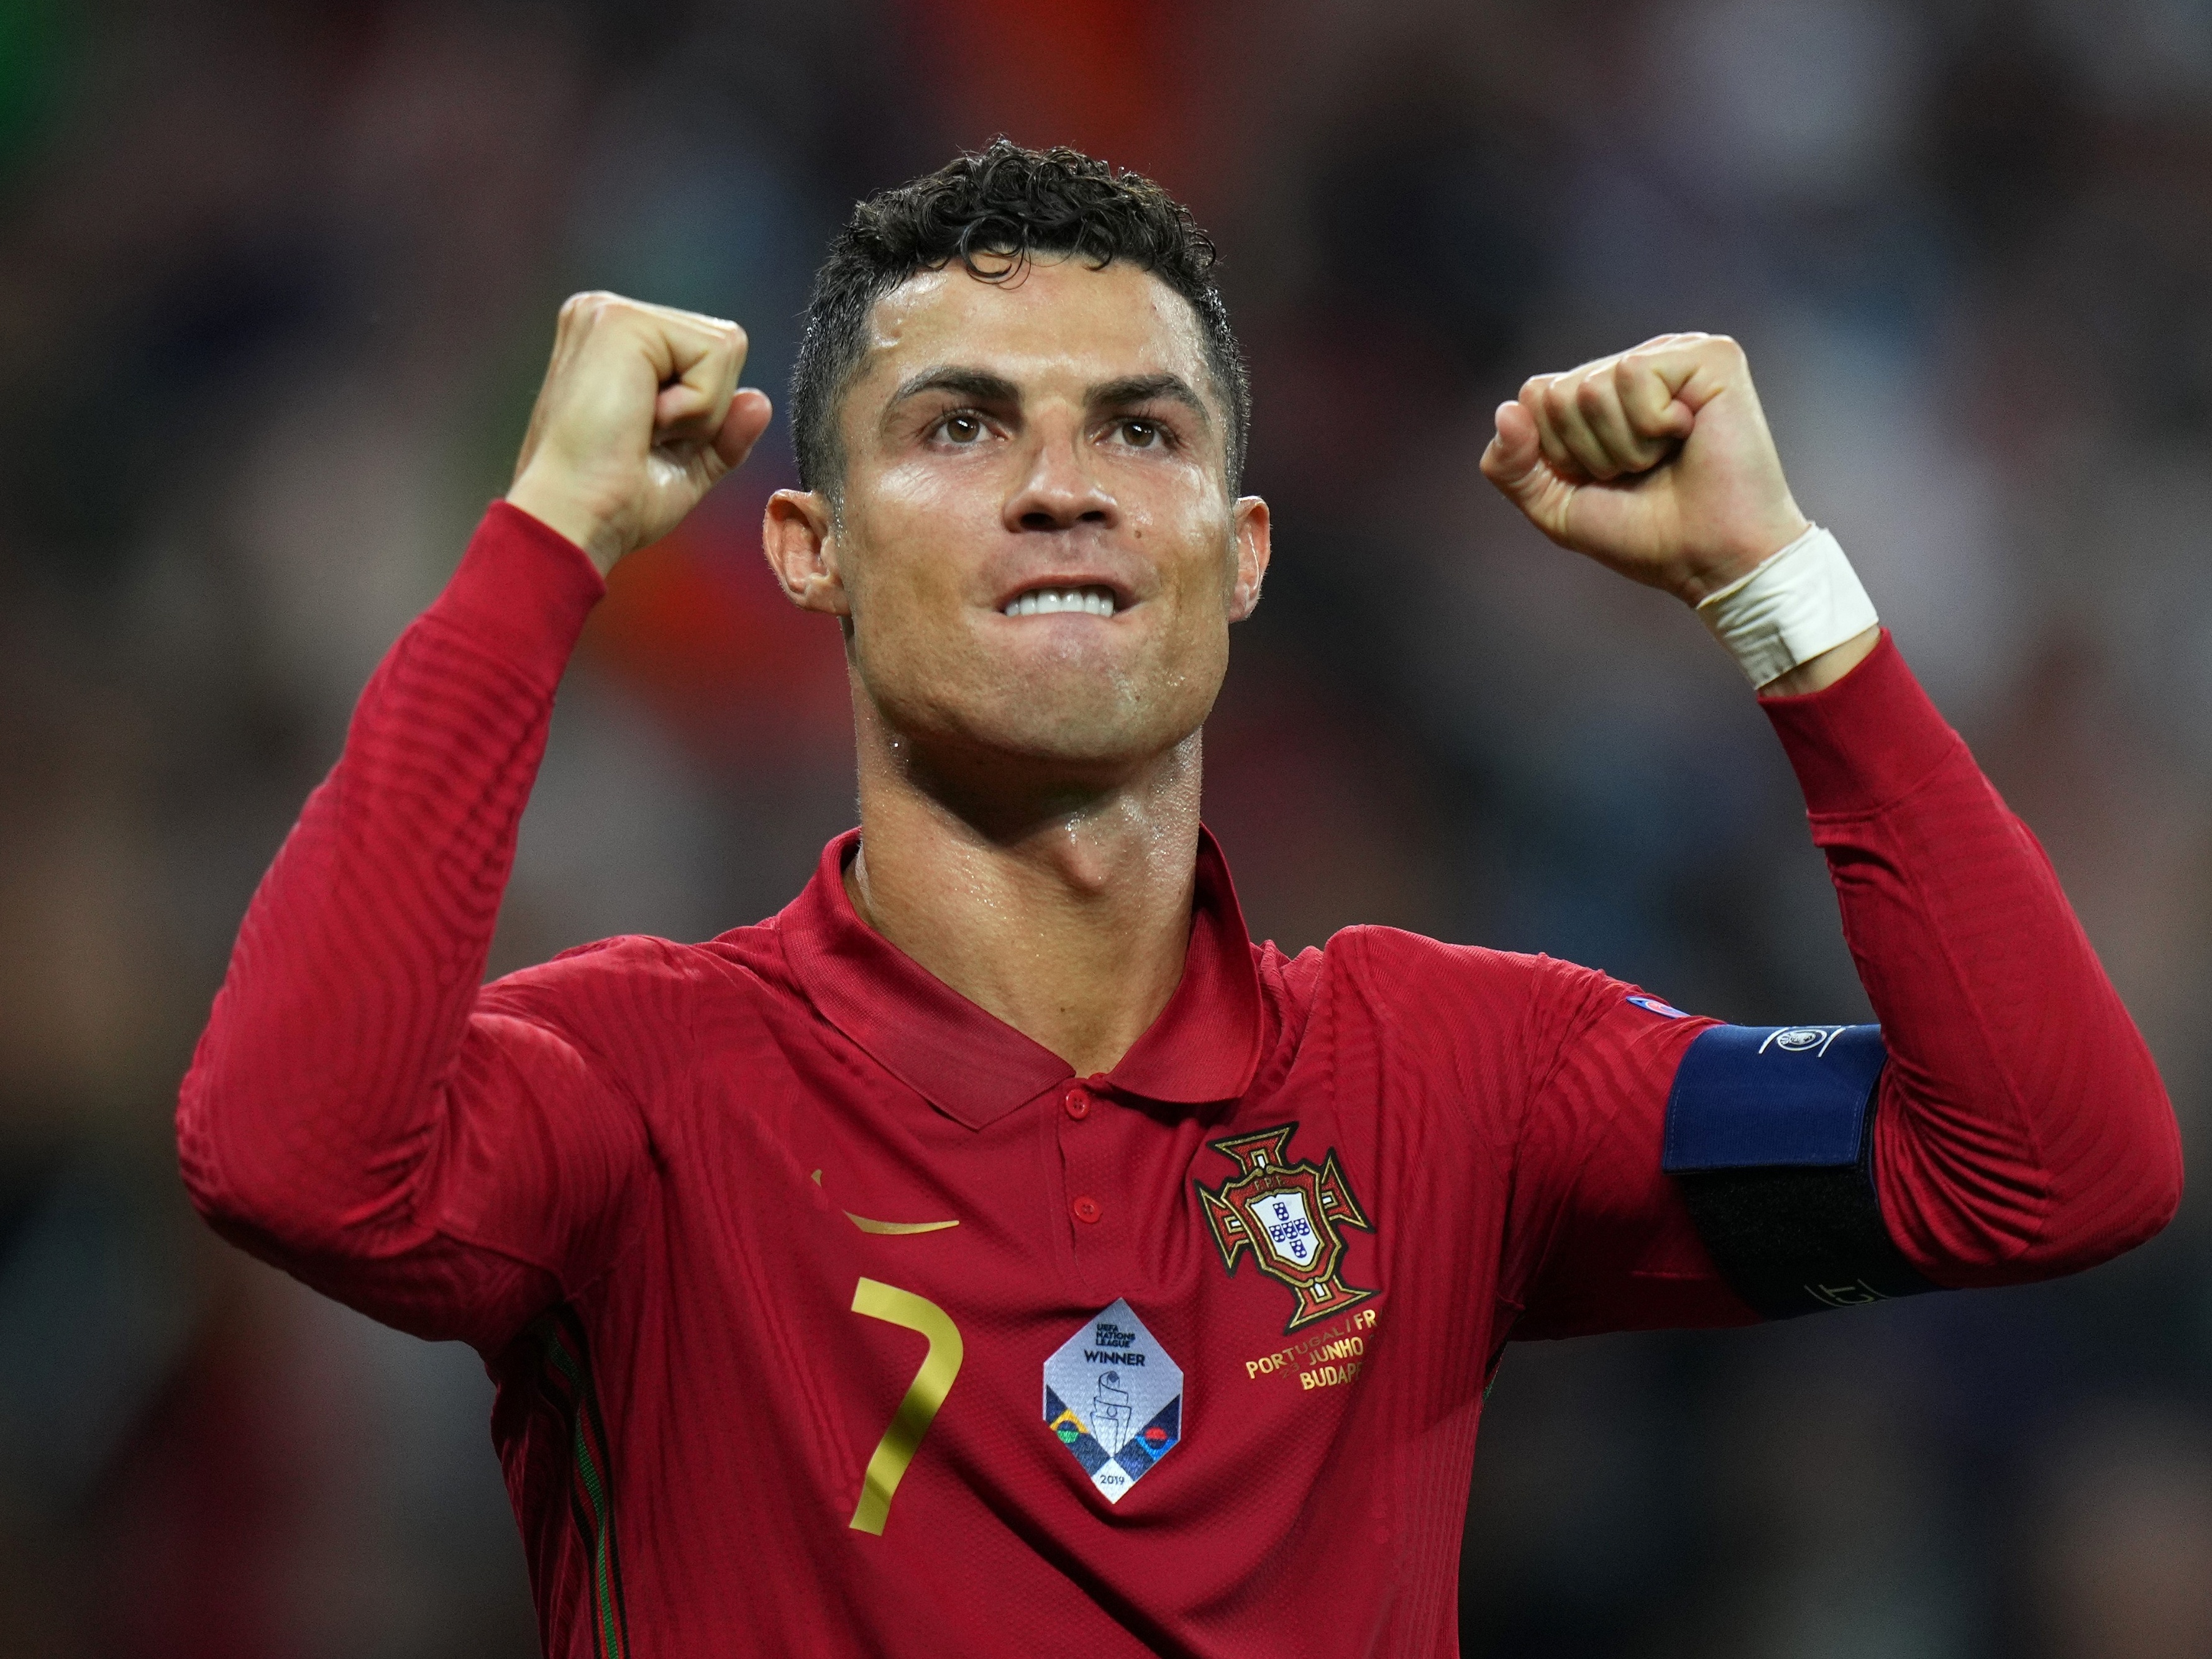 Não existe ninguém melhor que eu', diz Cristiano Ronaldo